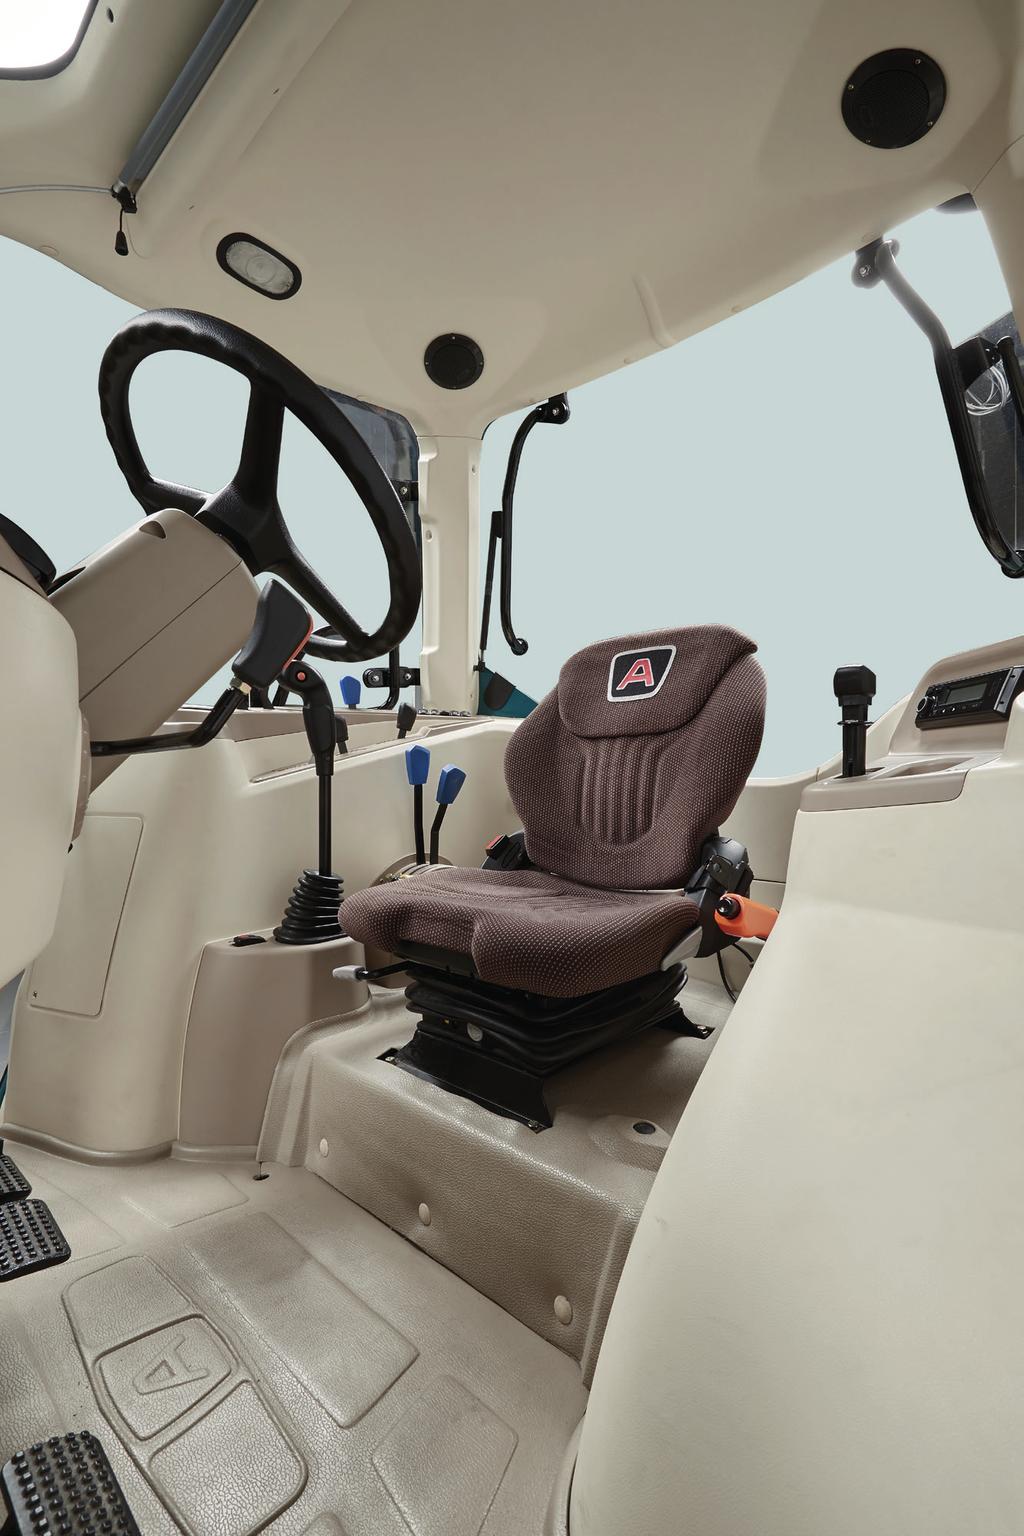 UN COMFORT AUTOMOBILISTICO Stile, comfort, funzionalità: all interno della cabina vi aspetta un ambiente tipicamente automobilistico all insegna del benessere e dell ergonomia, accogliente nelle